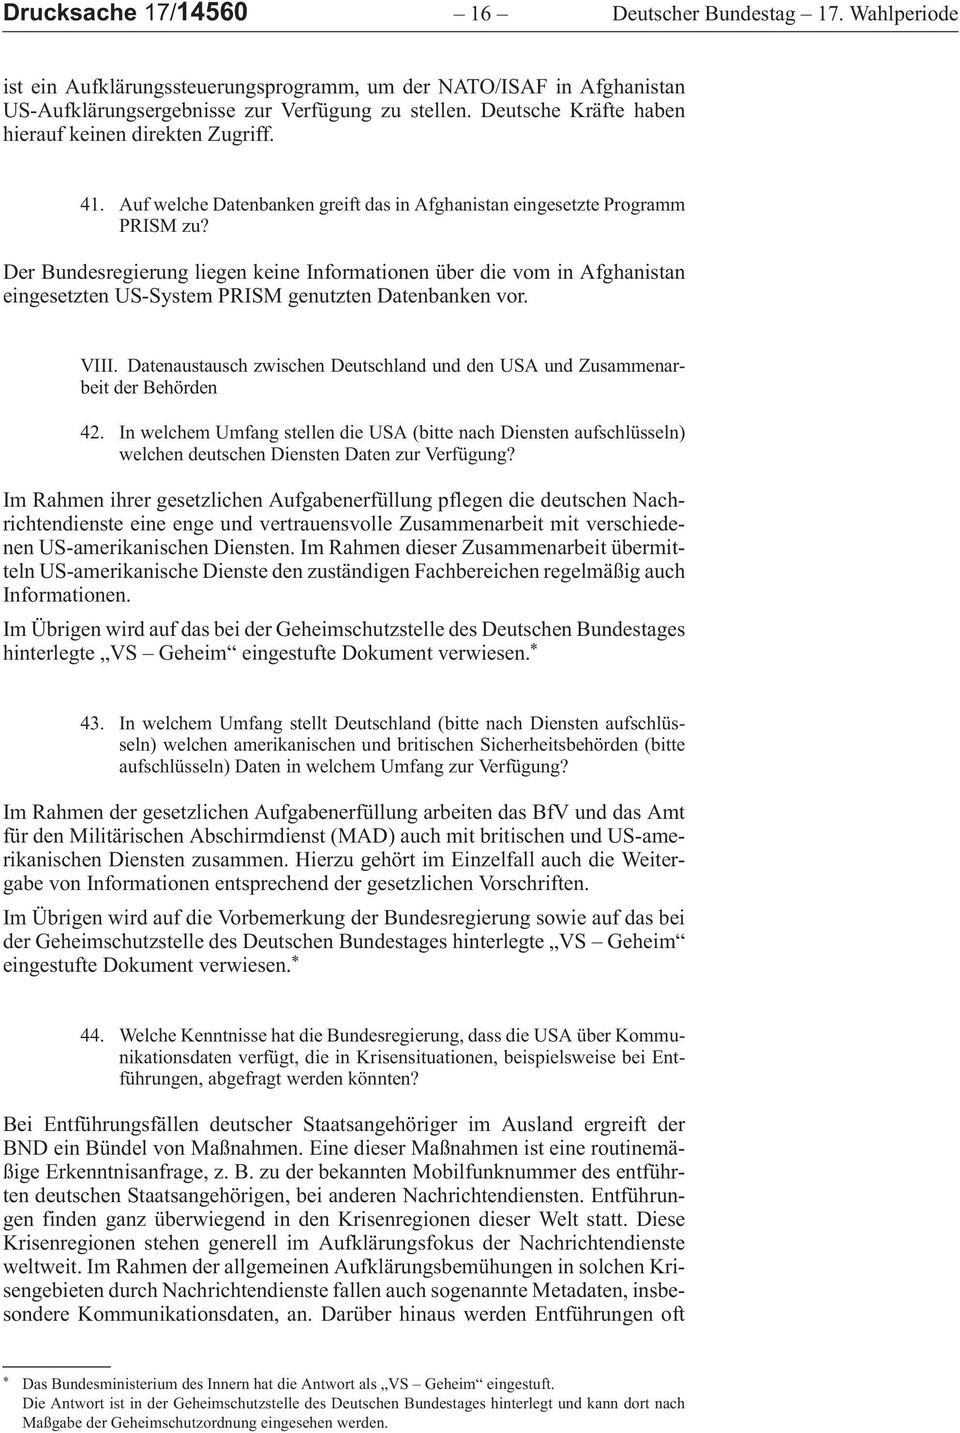 DerBundesregierungliegenkeineInformationenüberdievominAfghanistan eingesetzten US-System PRISM genutzten Datenbanken vor. VIII.